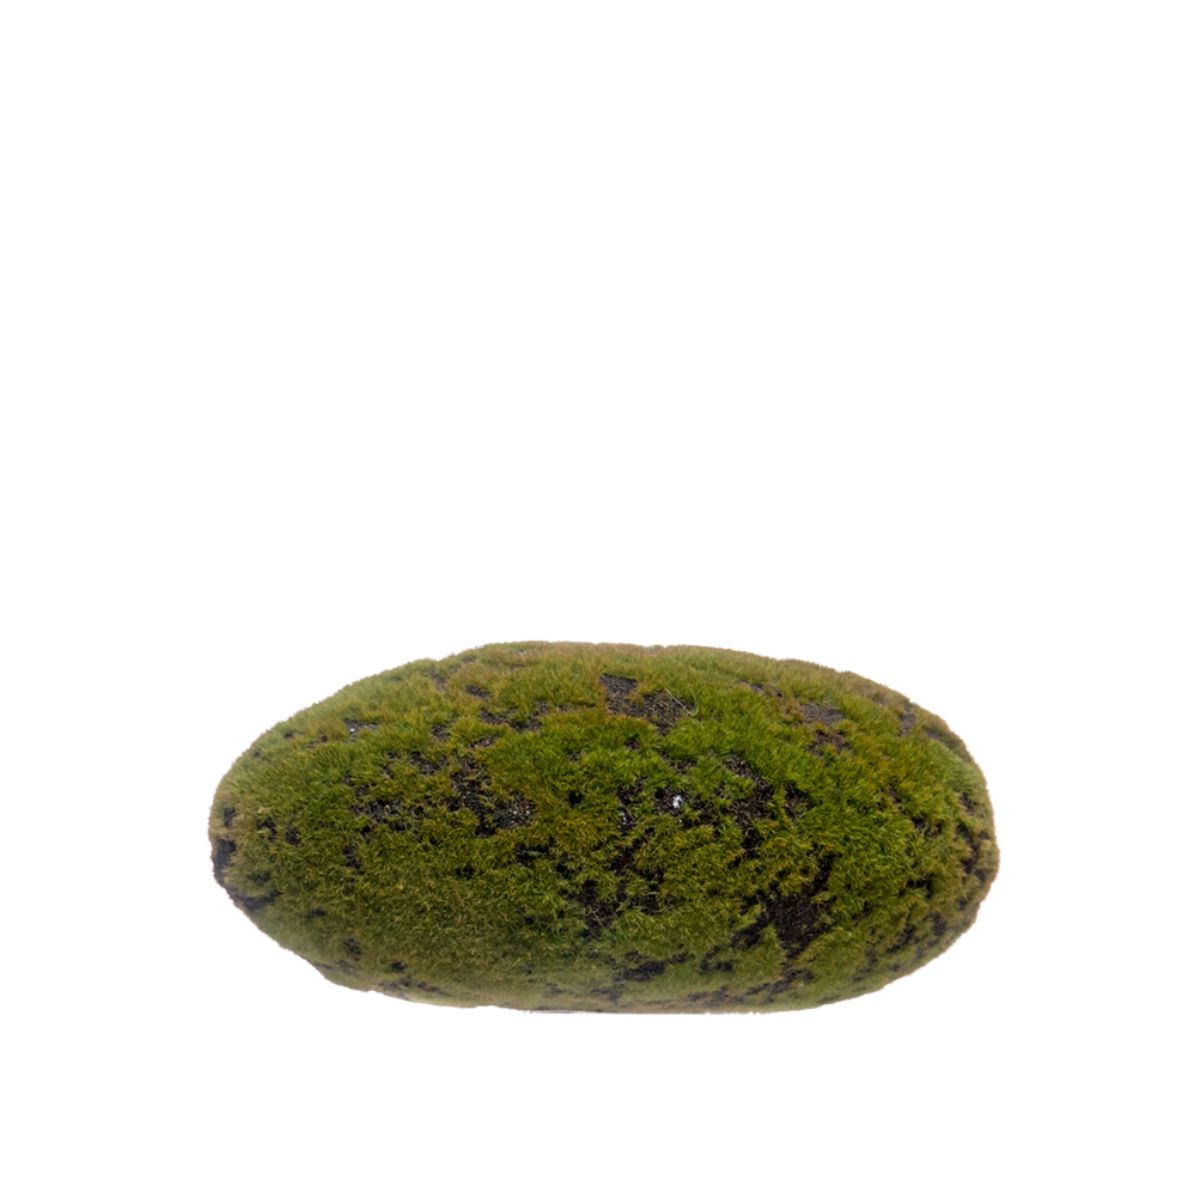 Pedra com Musgo